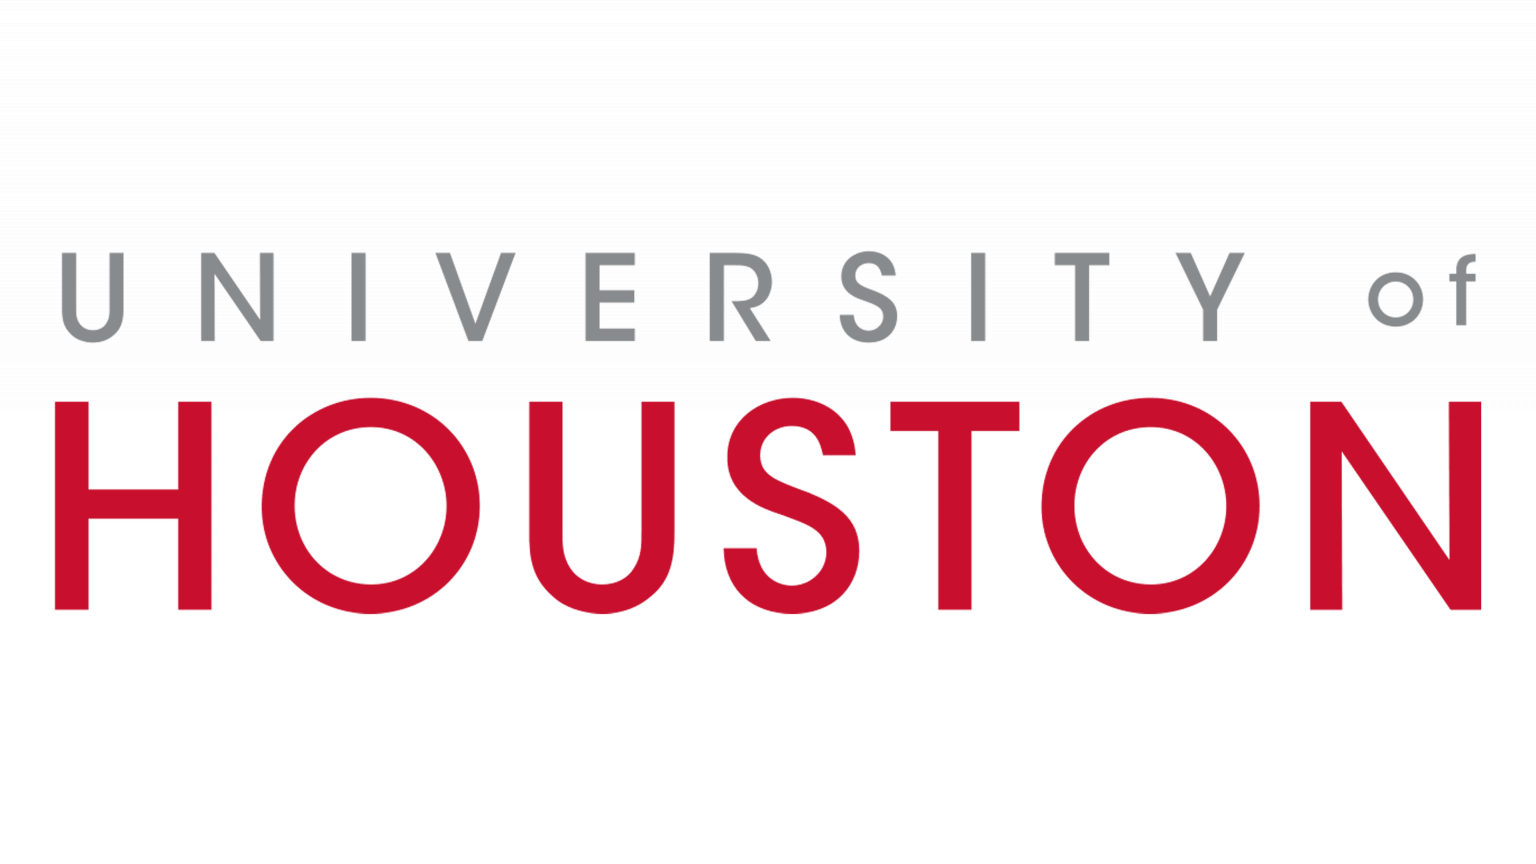 University-of-Houston-Logo-1536x864